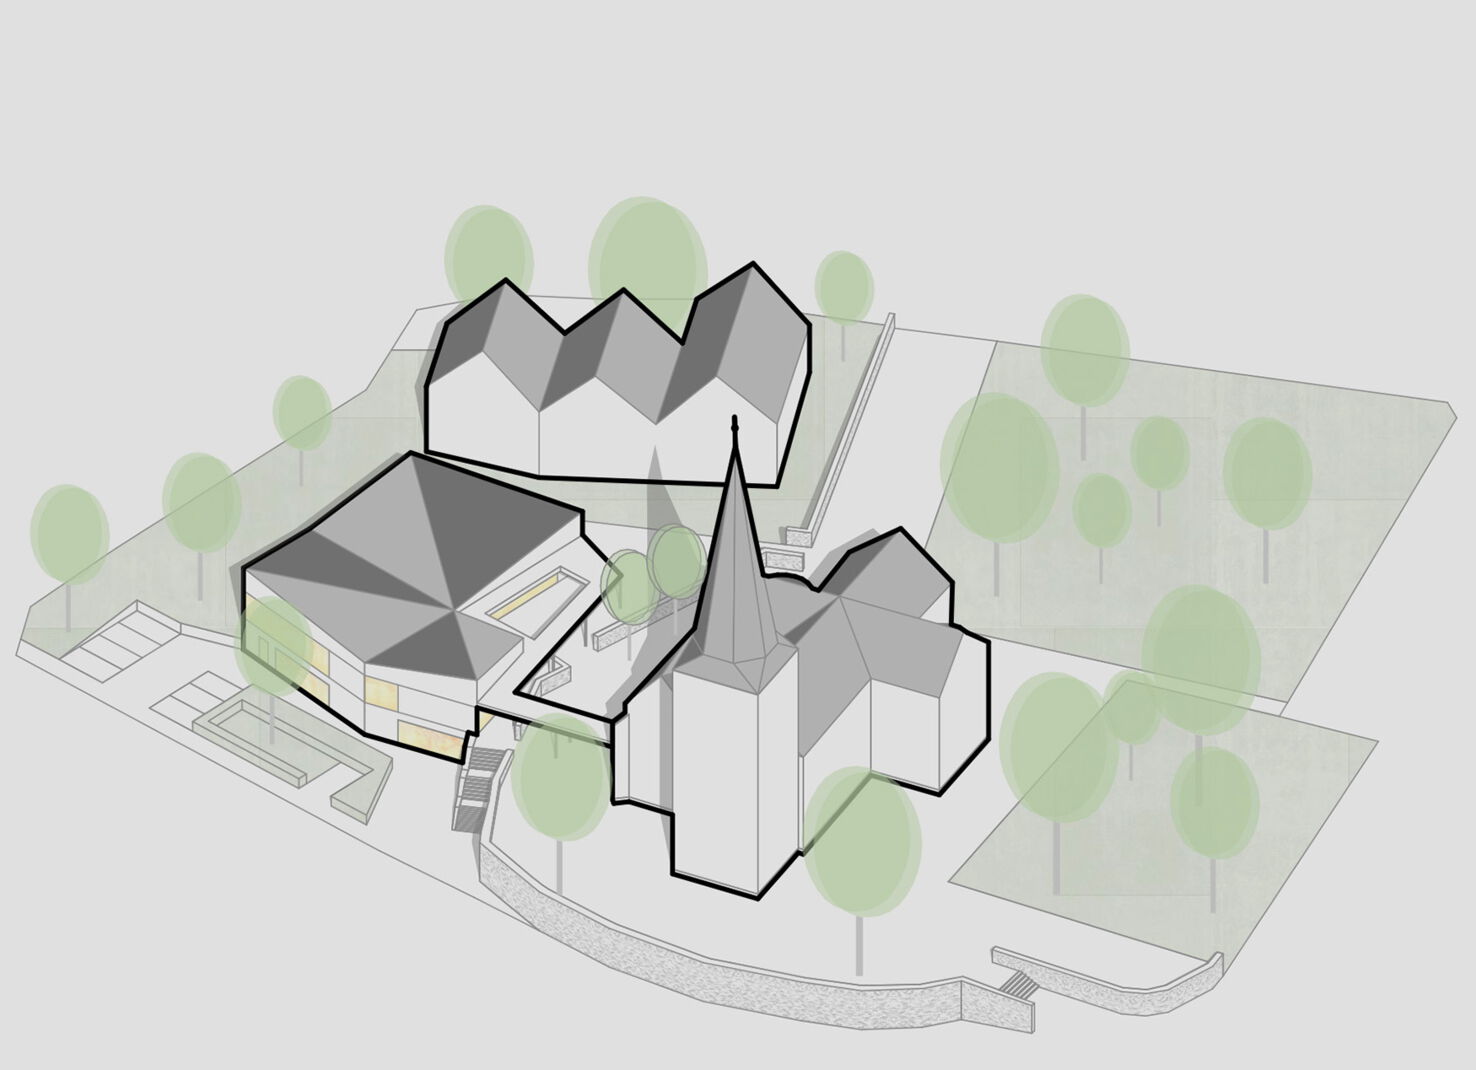 Bild 1 zu Projekt Neubau Gemeindehaus Bünde